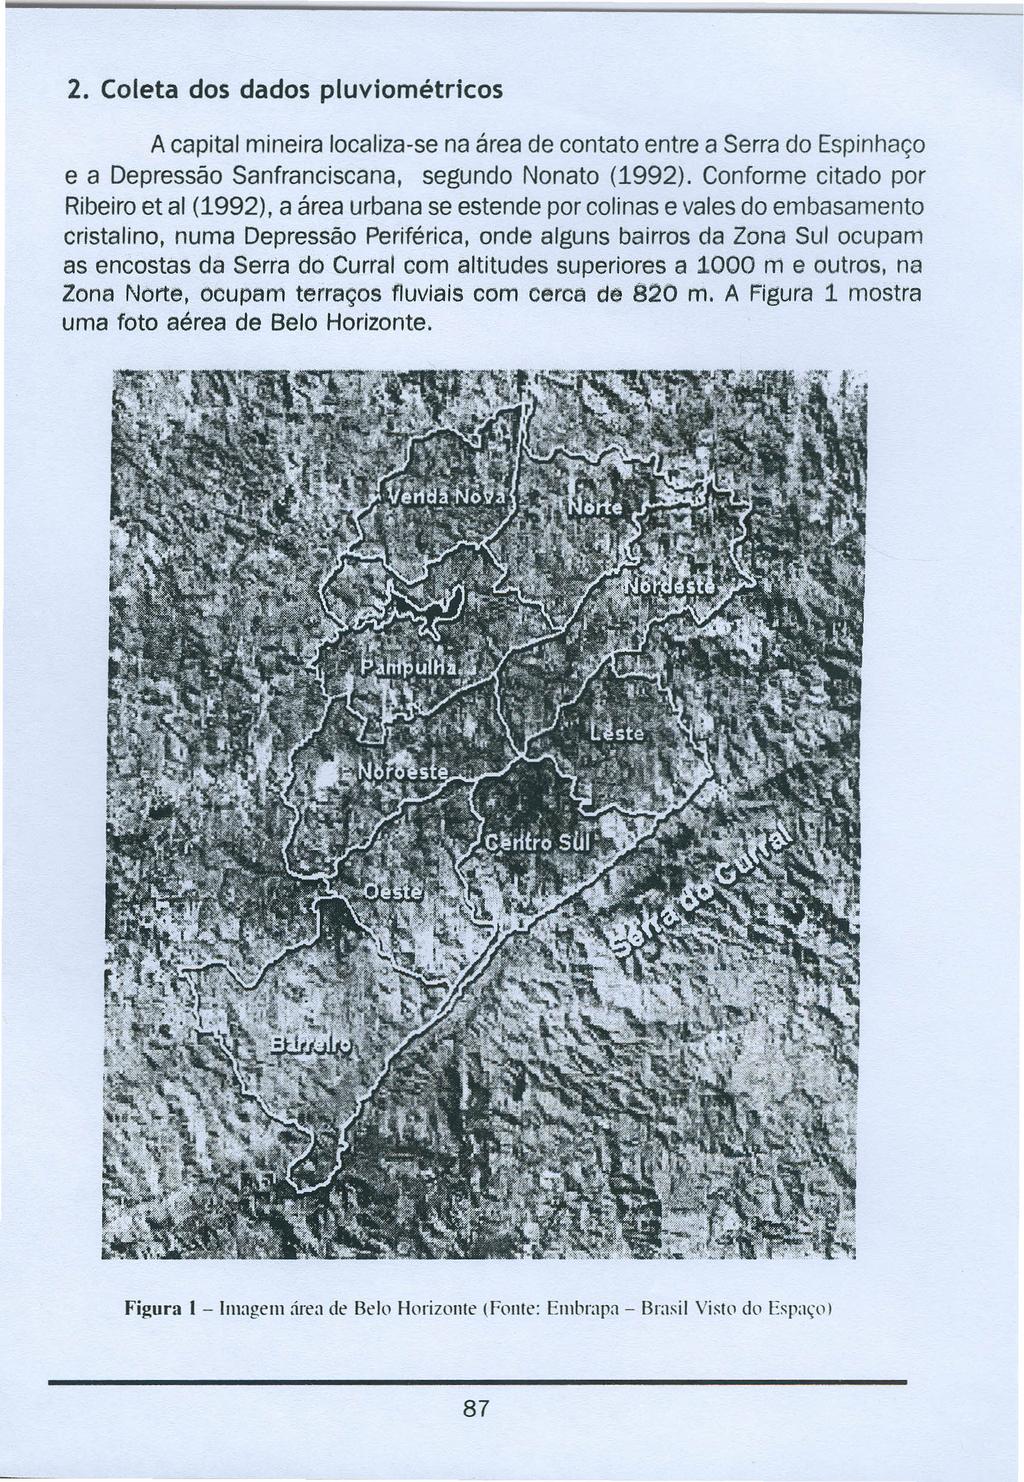 2. Coleta dos dados pluviométricos A capital mineira localiza-se na área de contato entre a Serra do Espinhaço e a Depressão Sanfranciscana, segundo Nonato (1992).